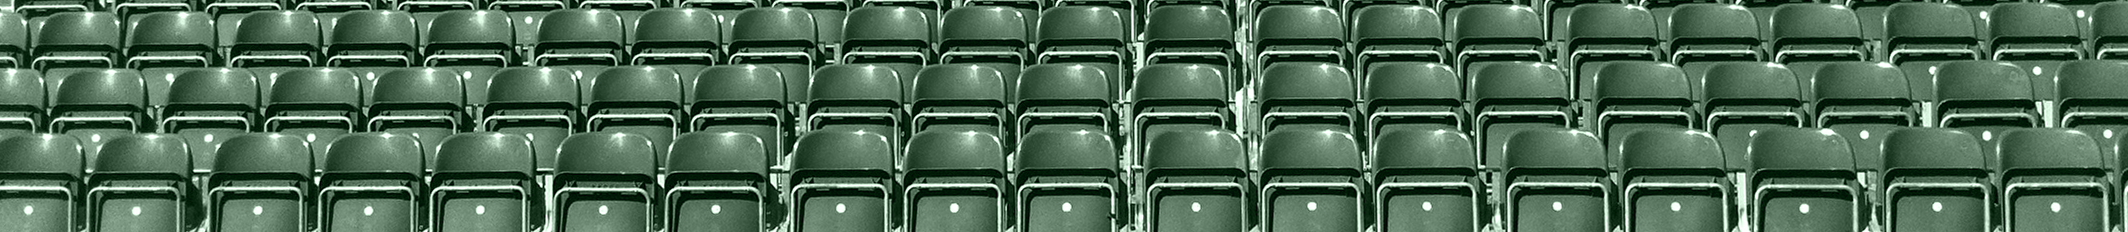 BOAT auditorium seating